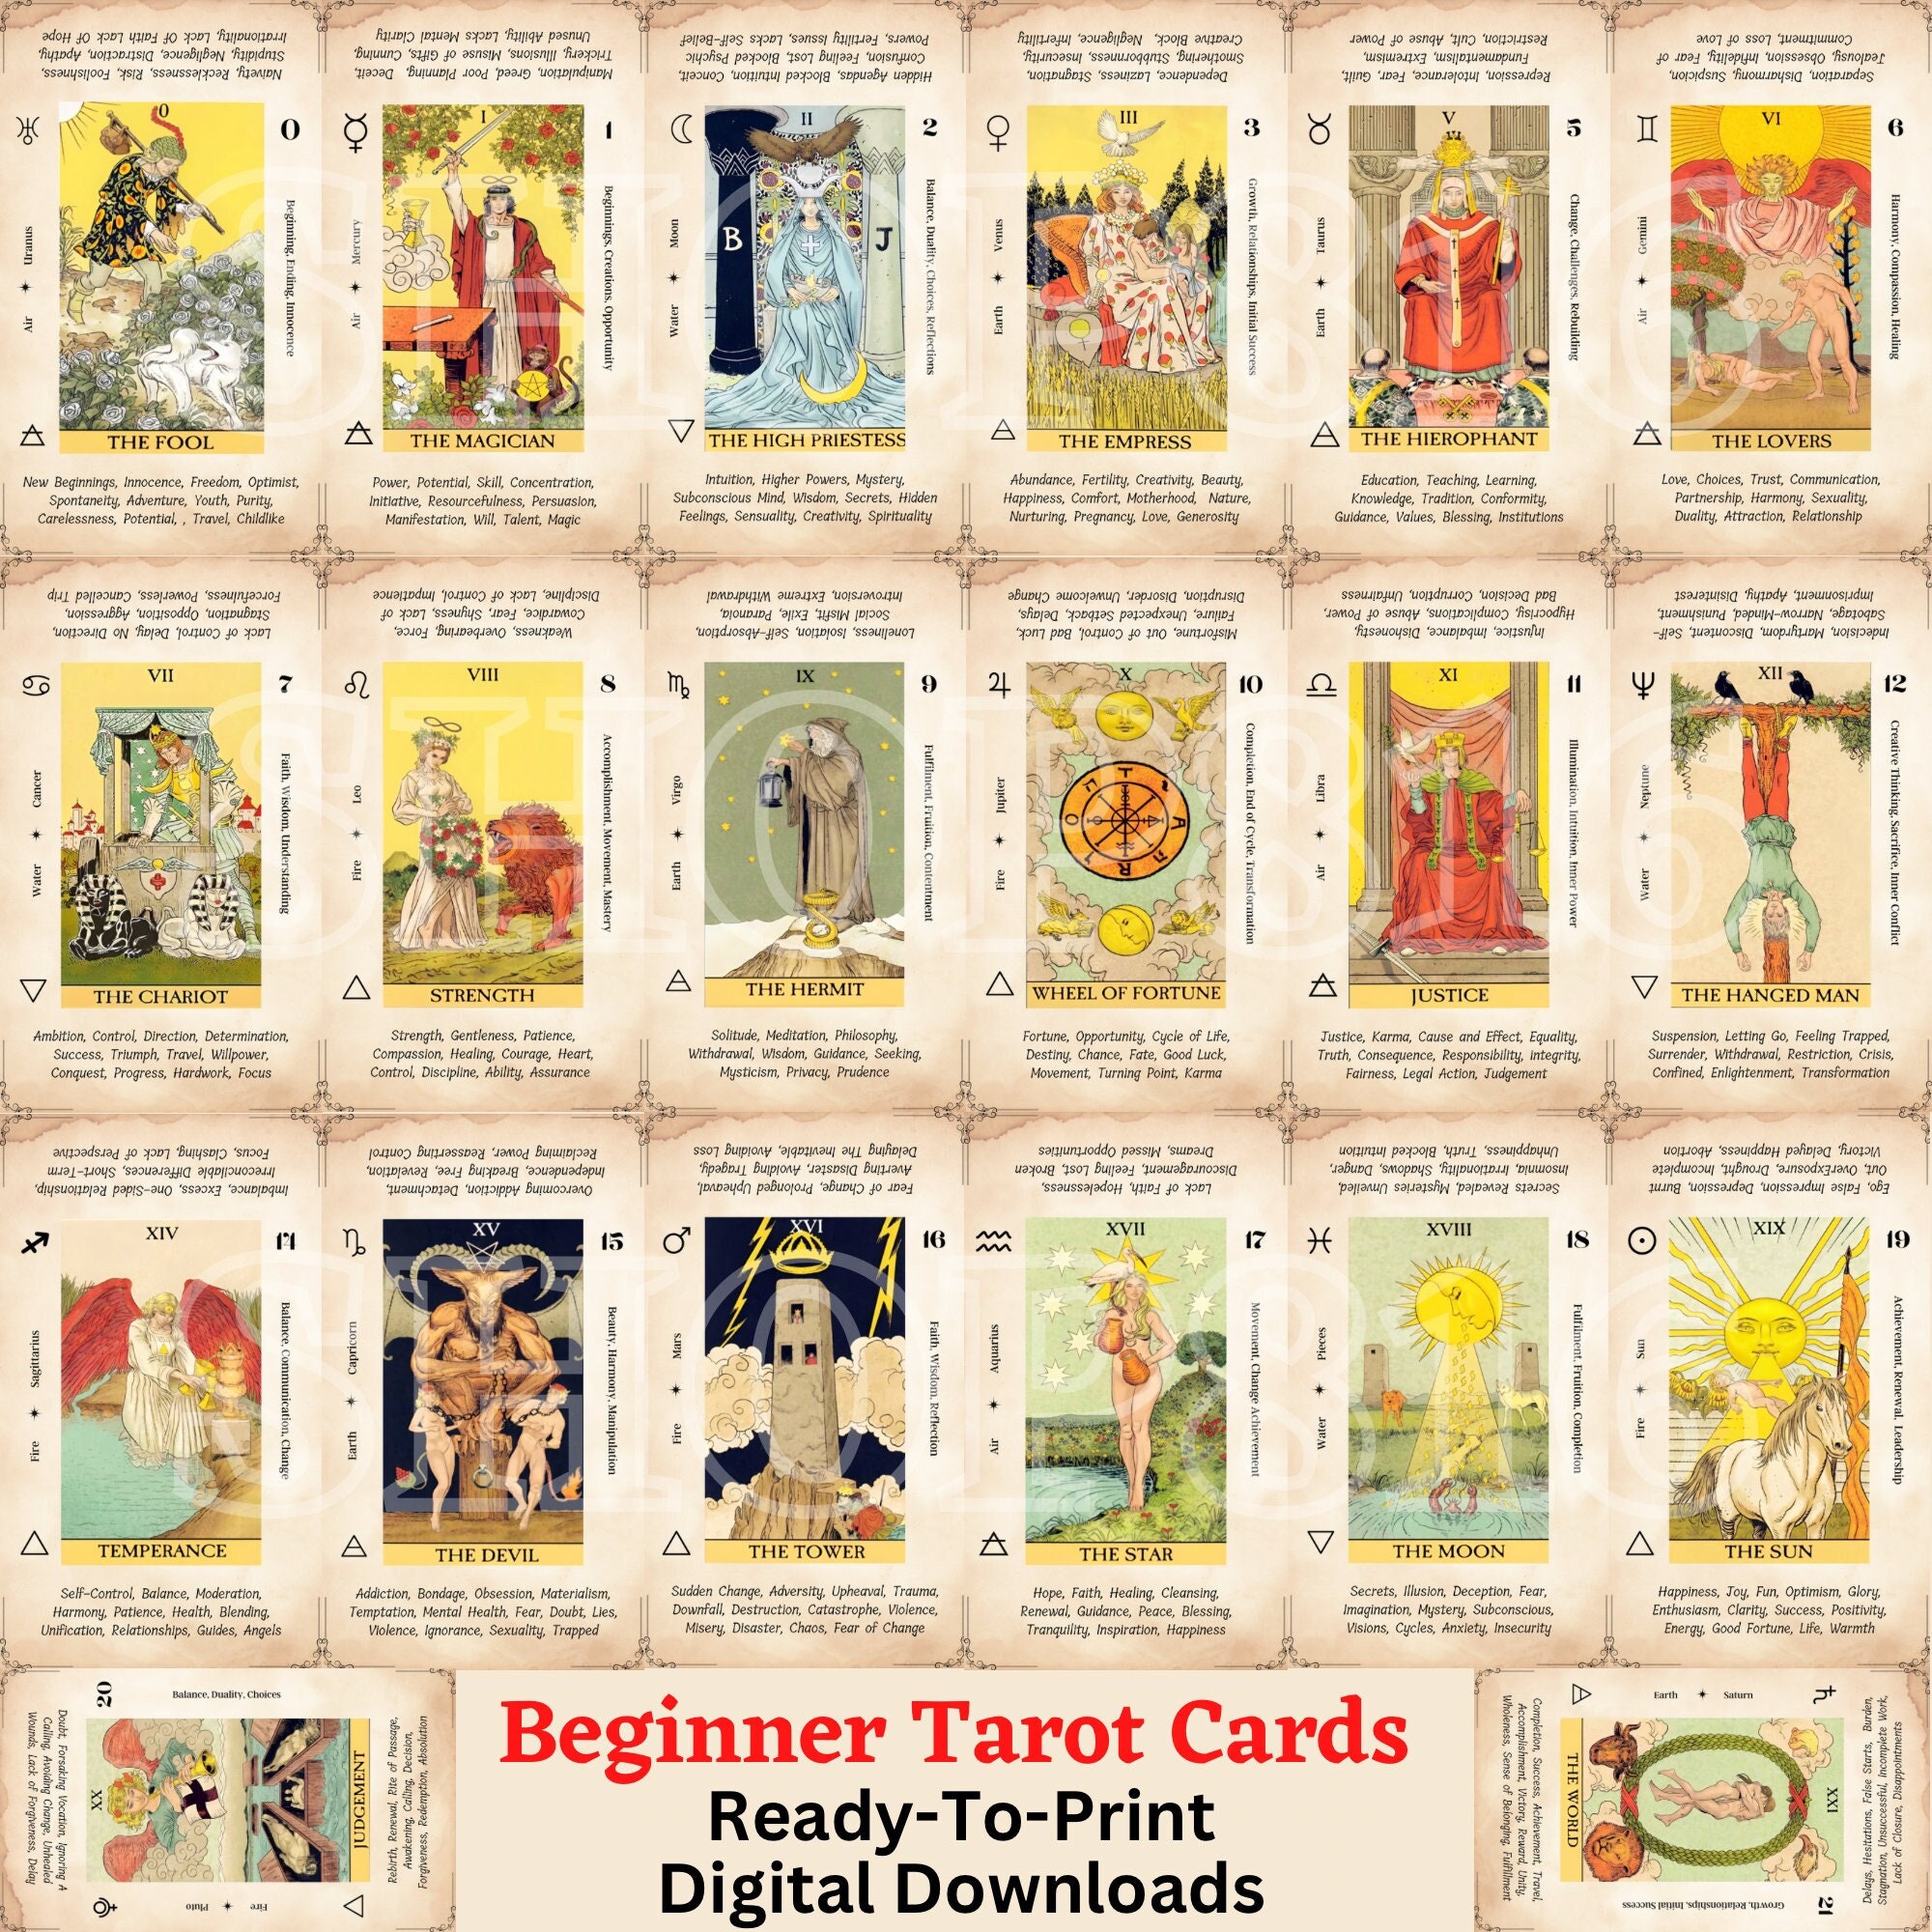 Regras Palavras Cruzadas : Ludijogos  Jeux de cartes regles, Jeu de  cartes, Jeu de carte tarot